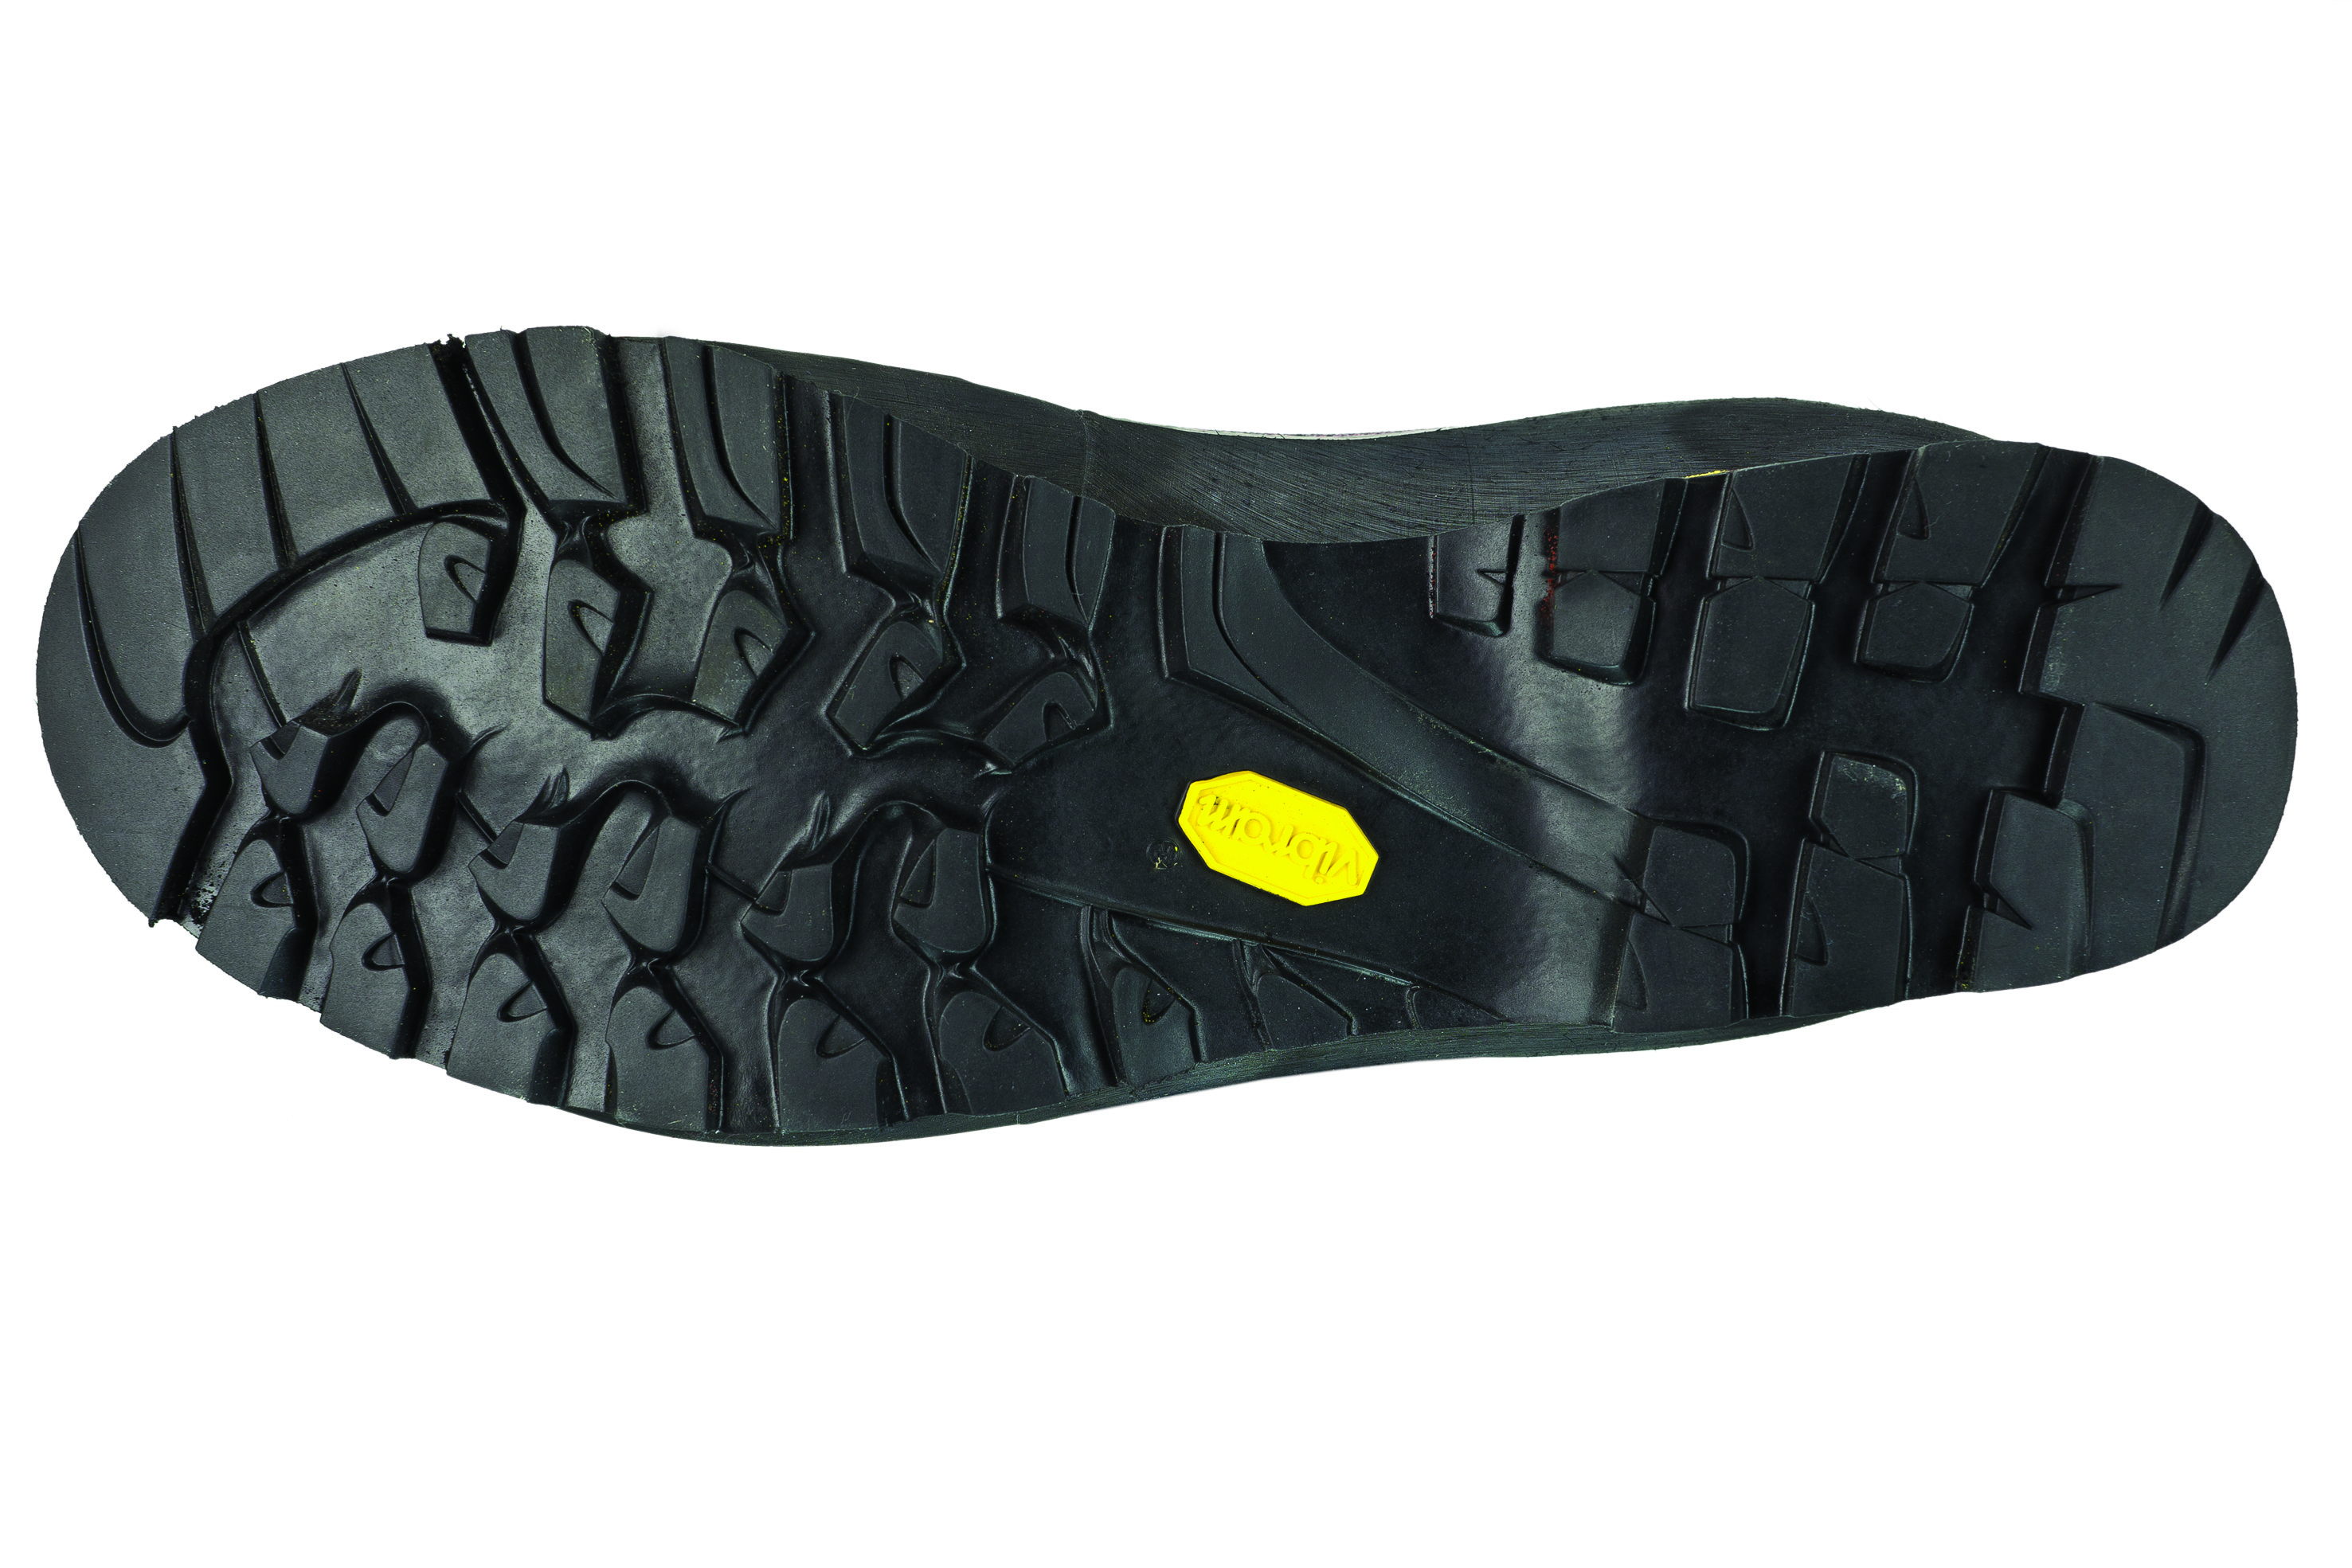 Высокотехнологичные легкие ботинки с бесшовной конструкцией SubSkin Injection La Sportiva Trango Alp Evo GTX